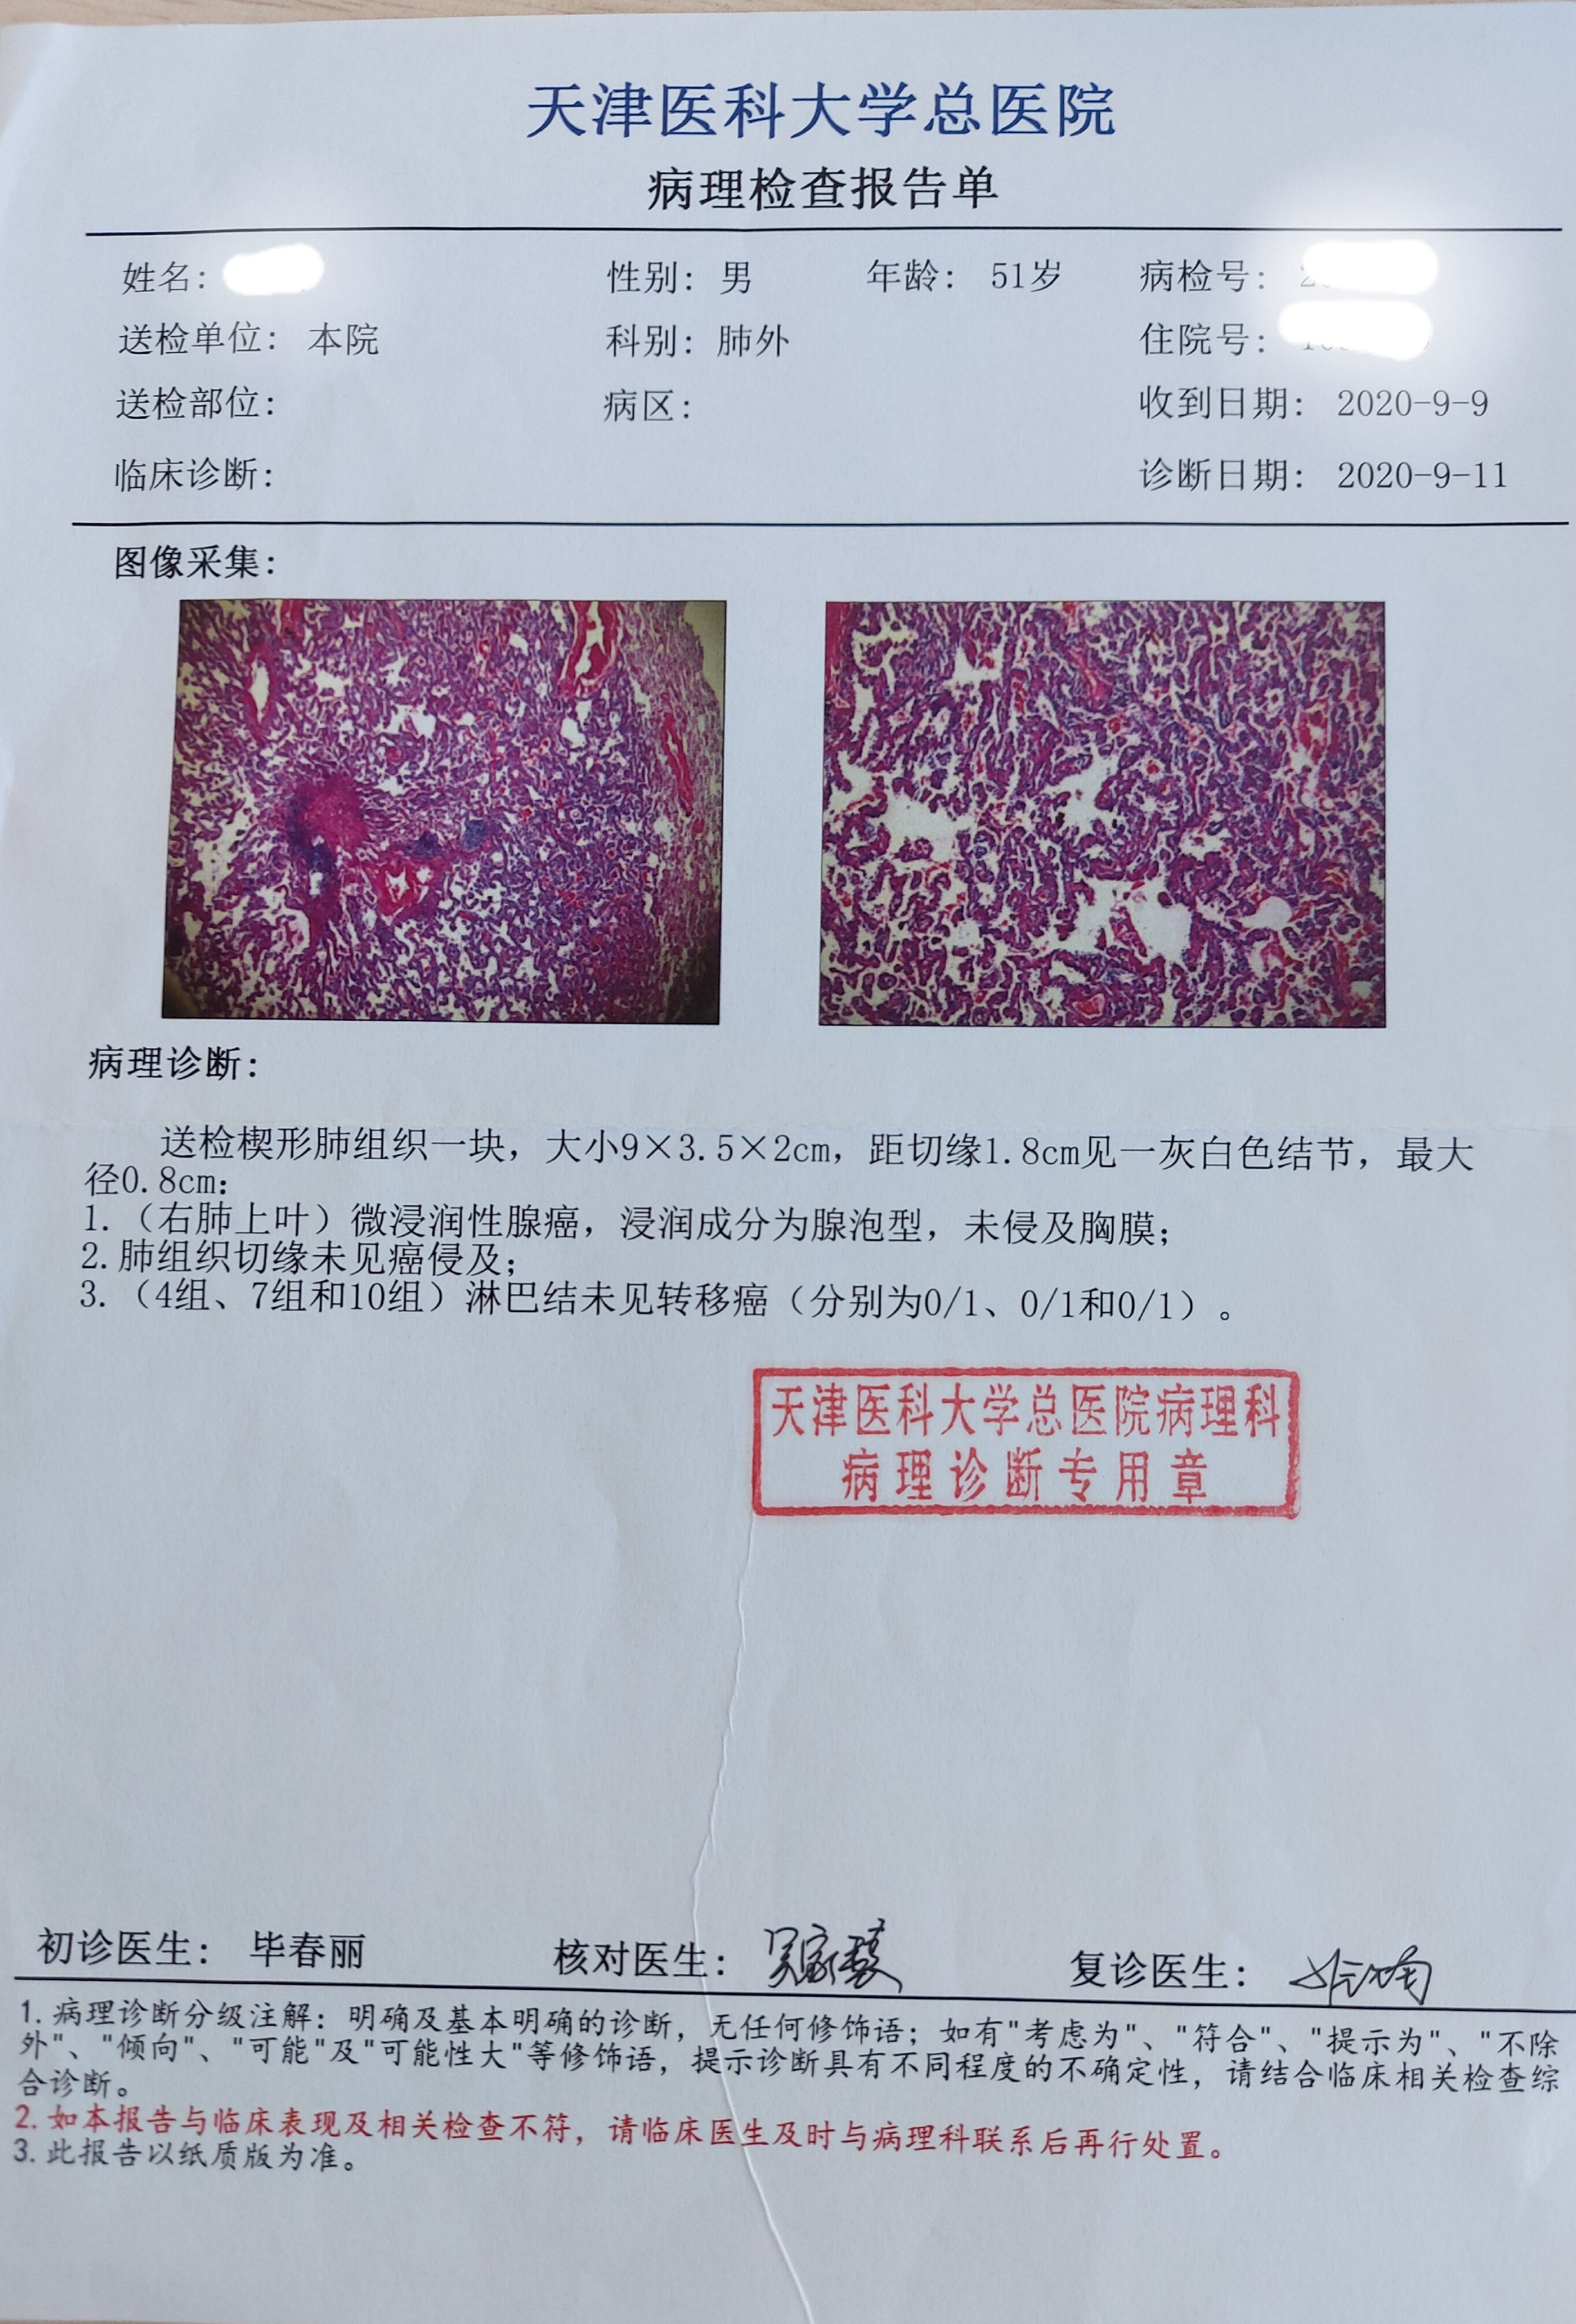 刘懿博士说肺癌(一亖二〇)肺磨玻璃结节观察一年半两次住院终切除